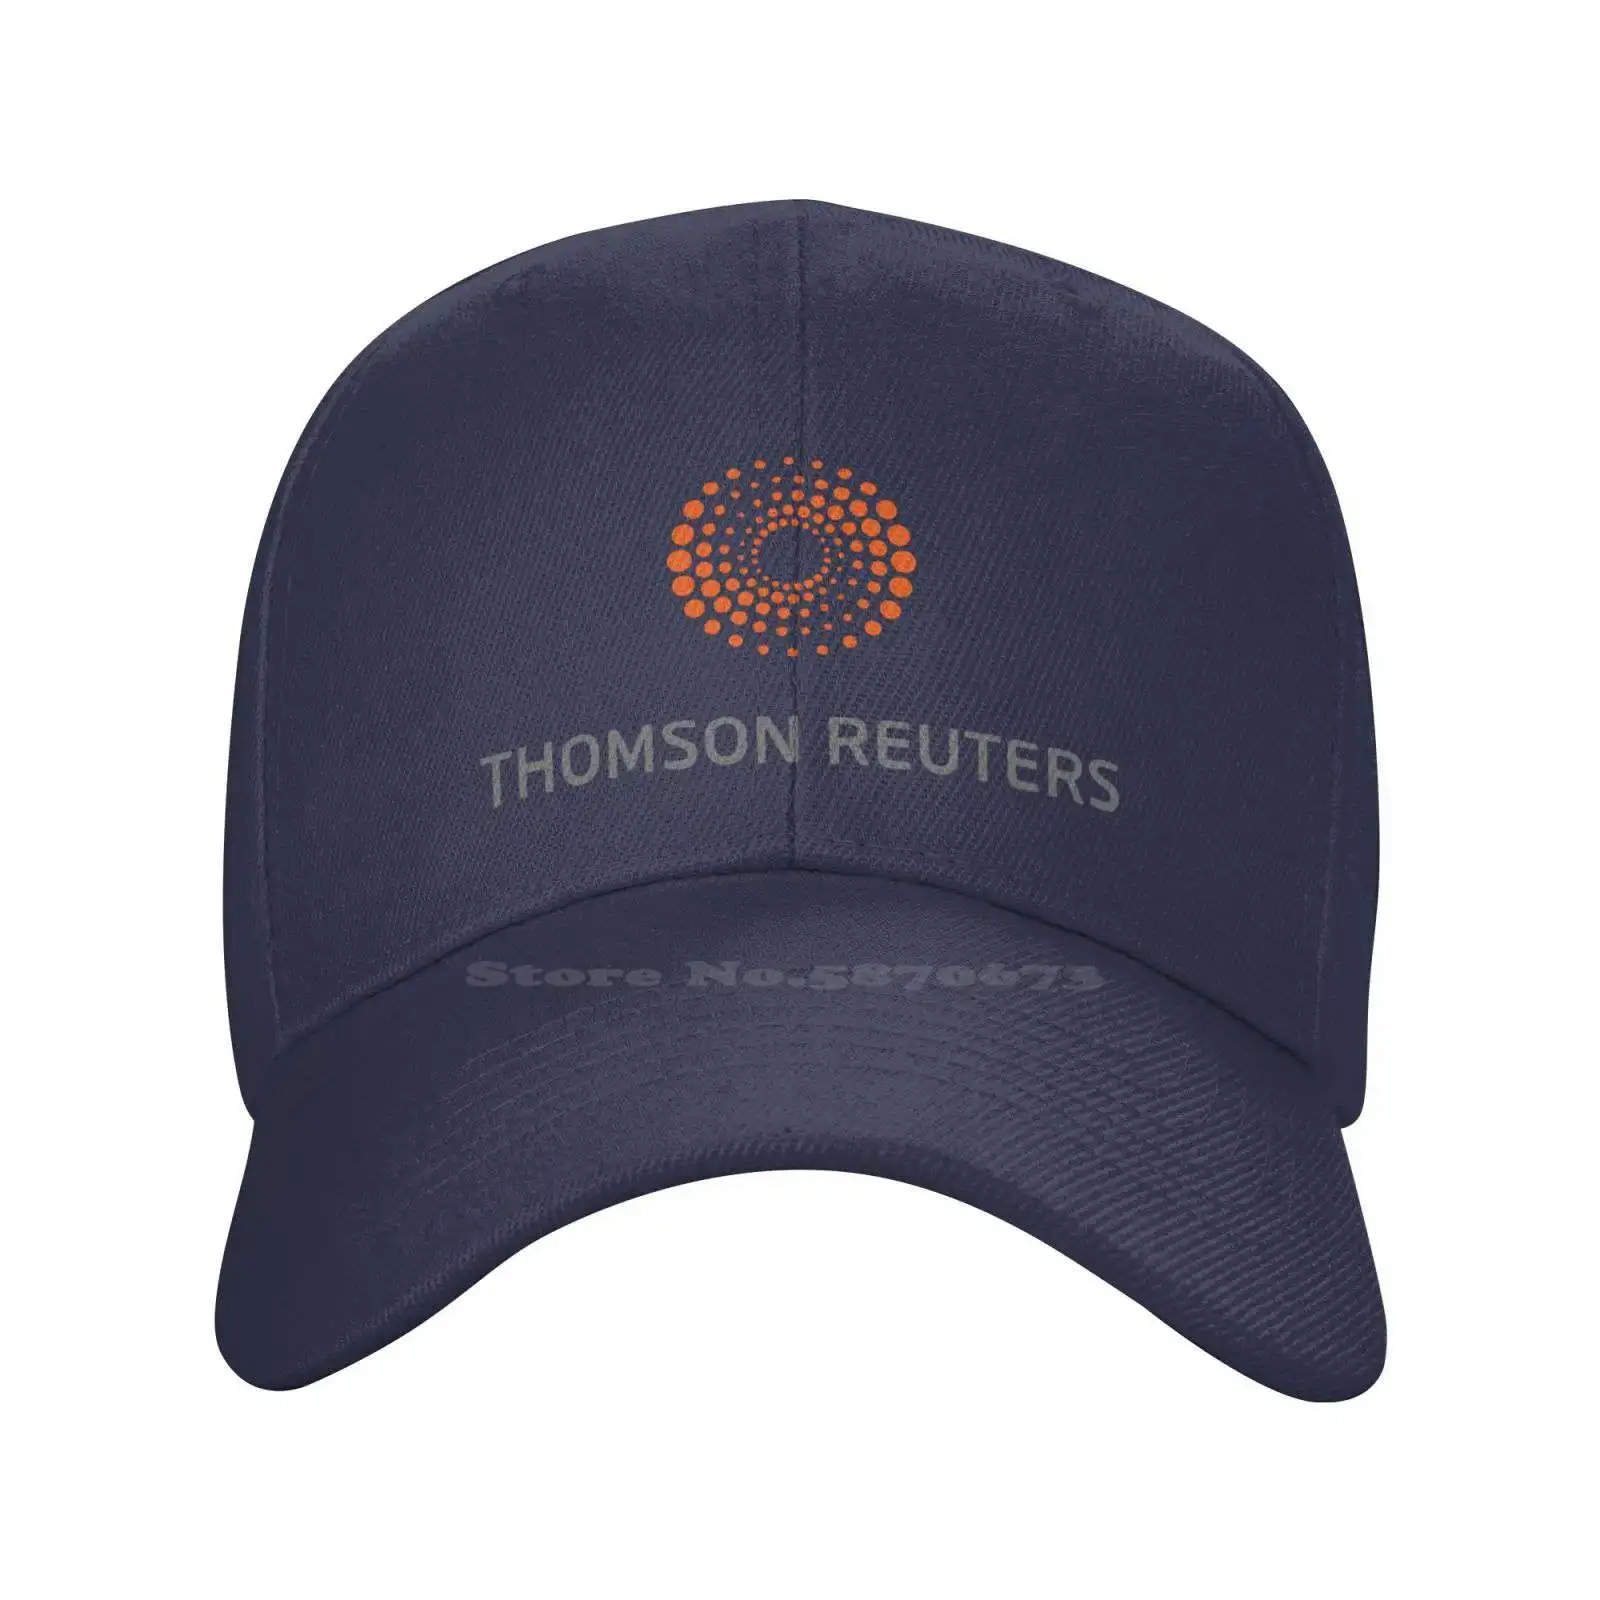 Thomson Reuters Logotipo Gráfico Impreso el Logotipo de la Marca de Alta calidad del Dril de algodón gorra de Punto sombrero de la gorra de Béisbol Imagen 1